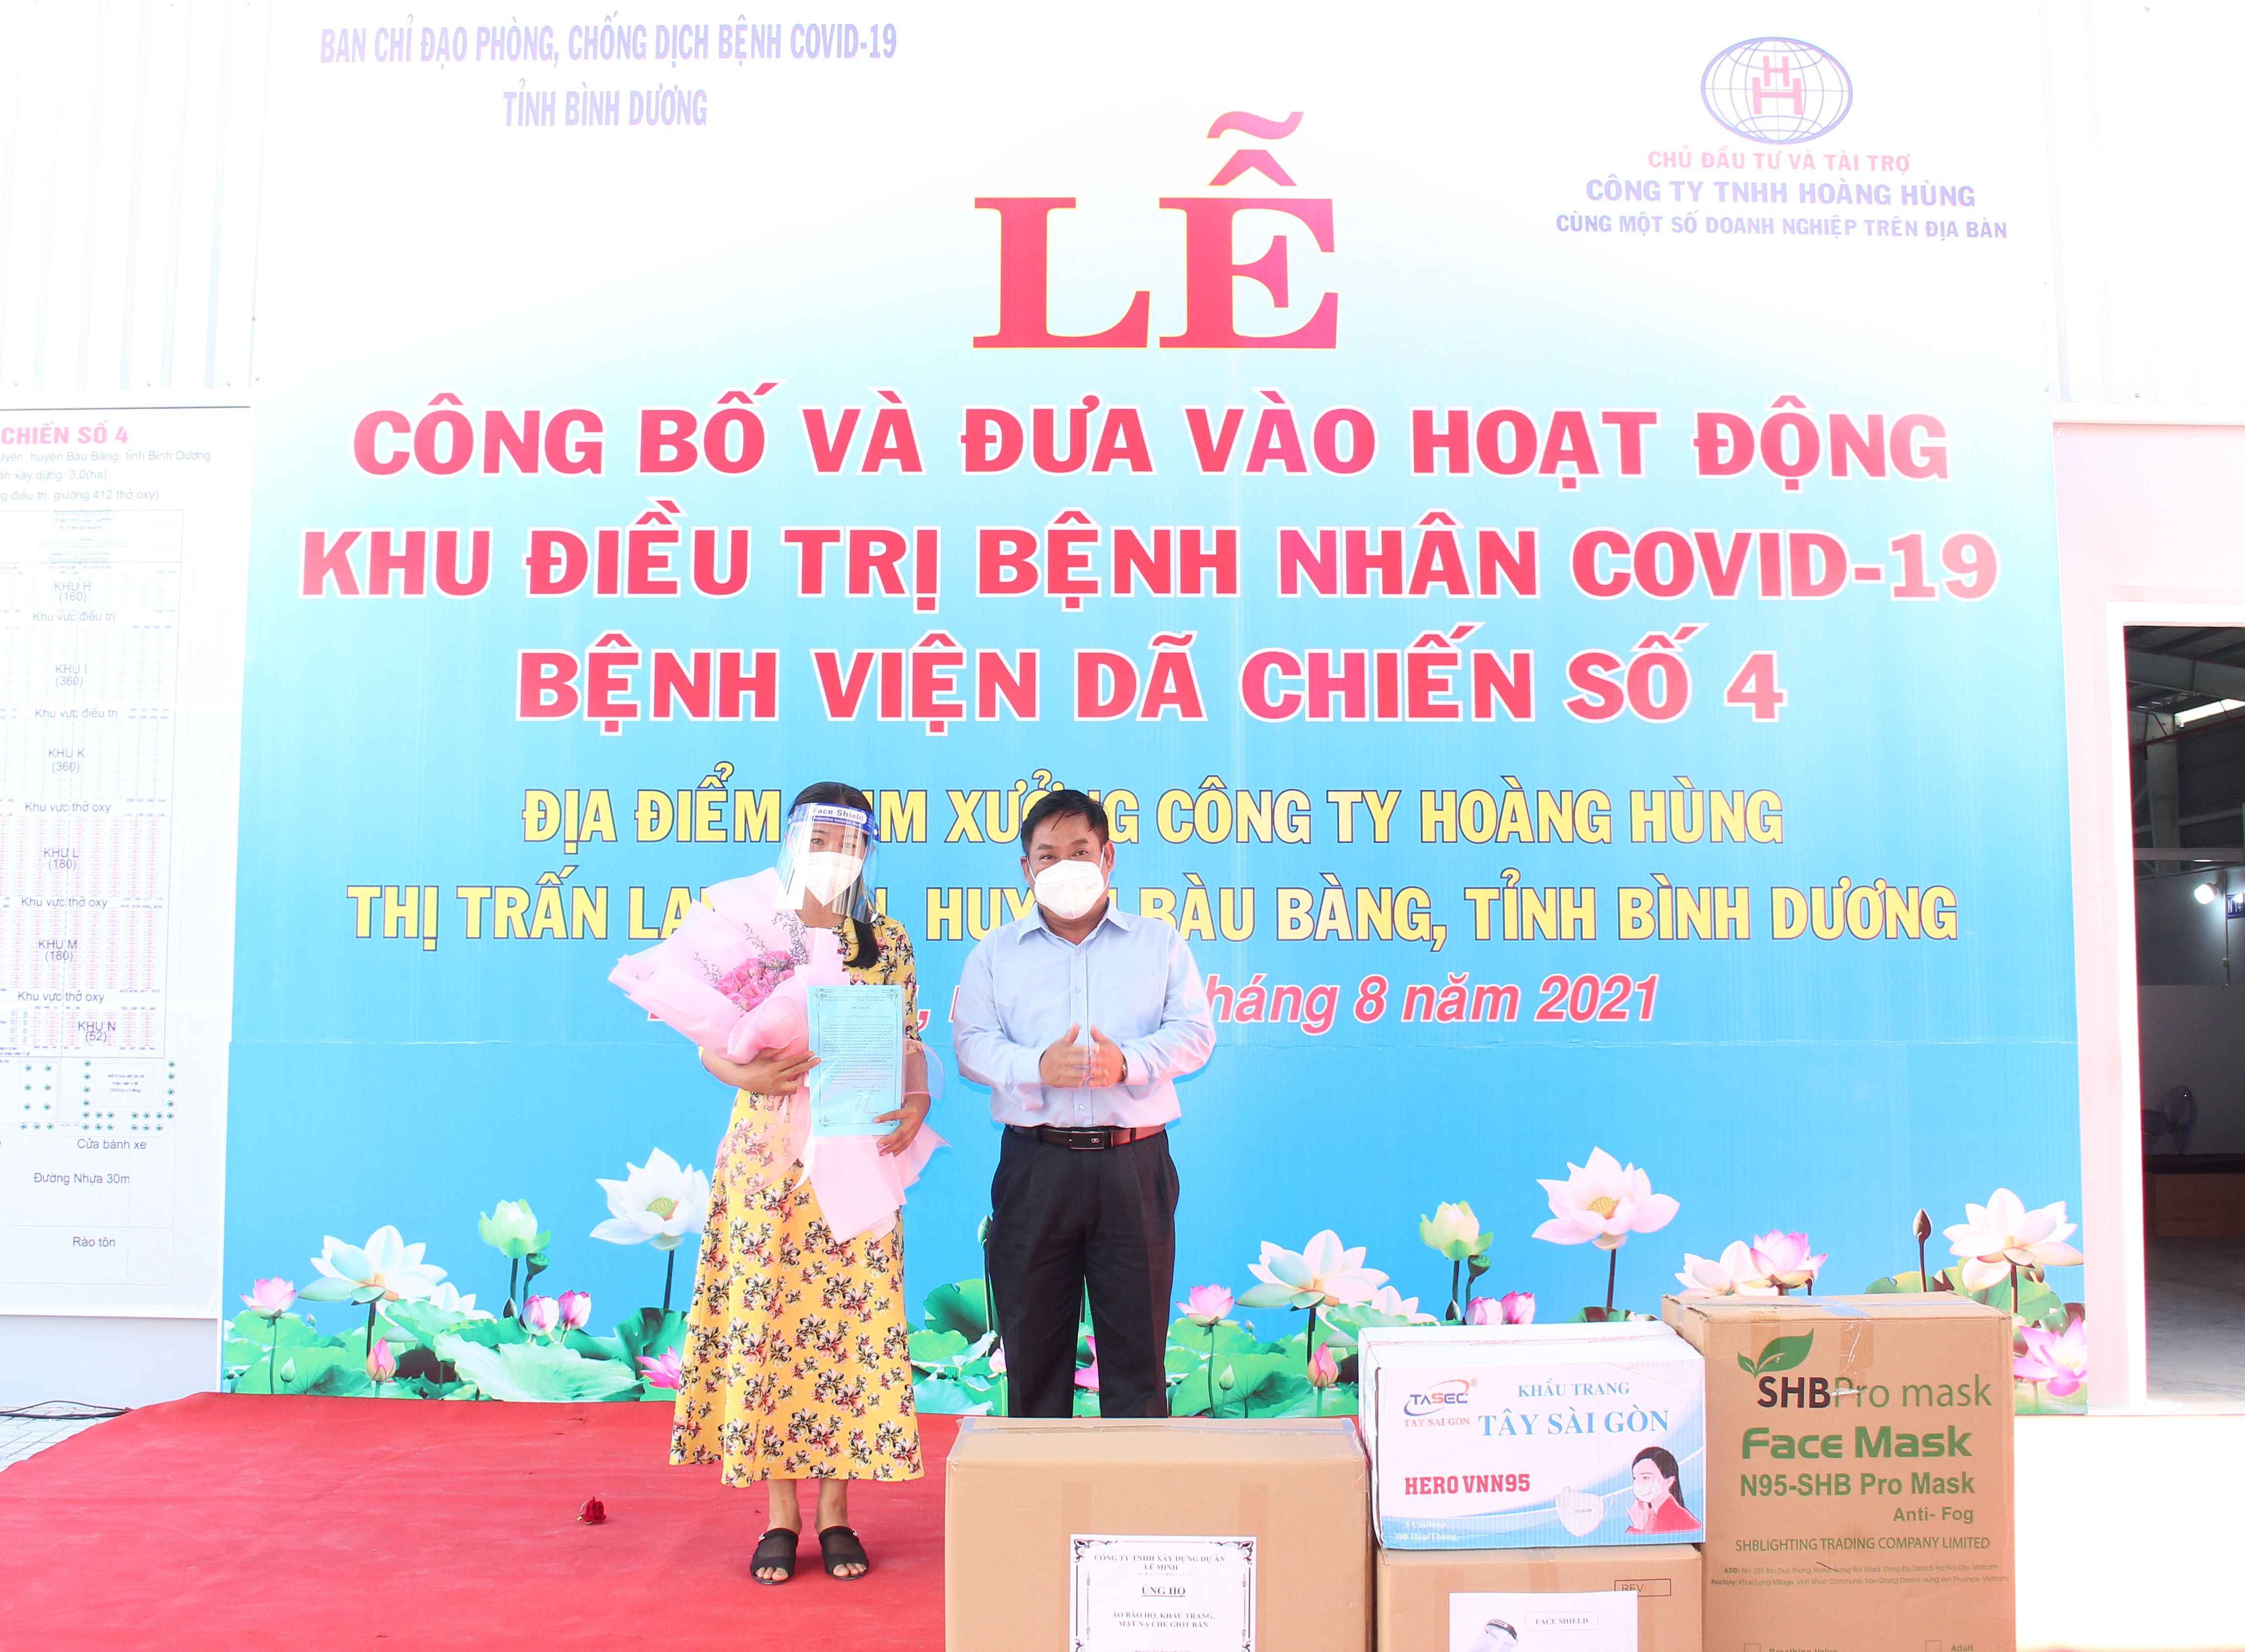 Ông Võ Thành - Công ty TNHH xây dựng dự án Lê Minh trao tặng cho Bệnh viện dã chiến số 4 trang thiết bị, vật tư trong công tác phòng, chống dịch với tổng số tiền 400.000.000 đồng